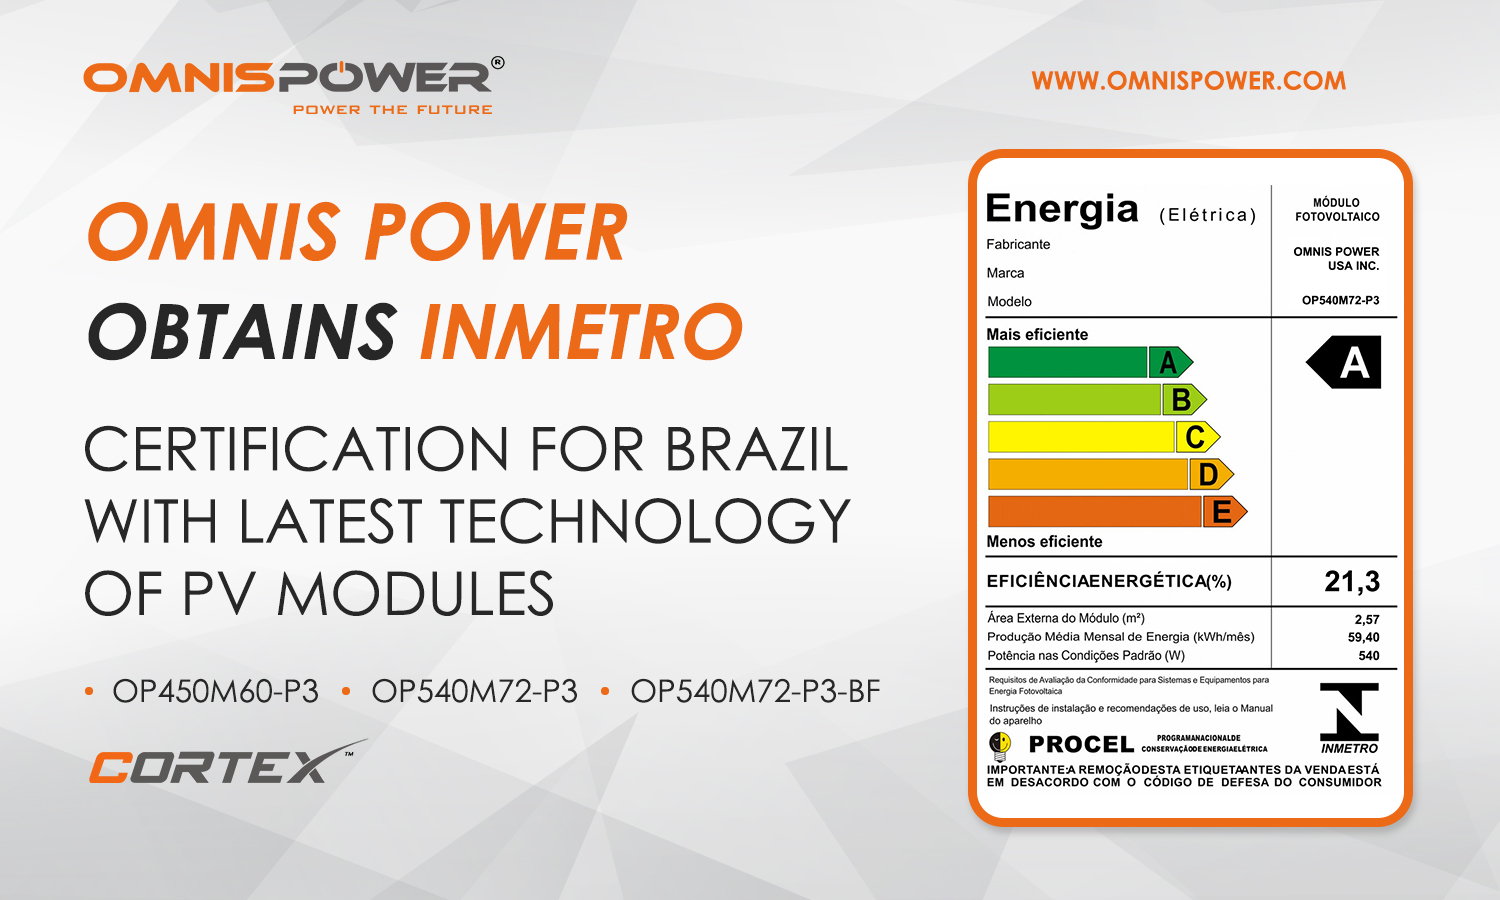 Omnis Solar Power cherries INMETRO Certification For Entering the Brazilian Market.